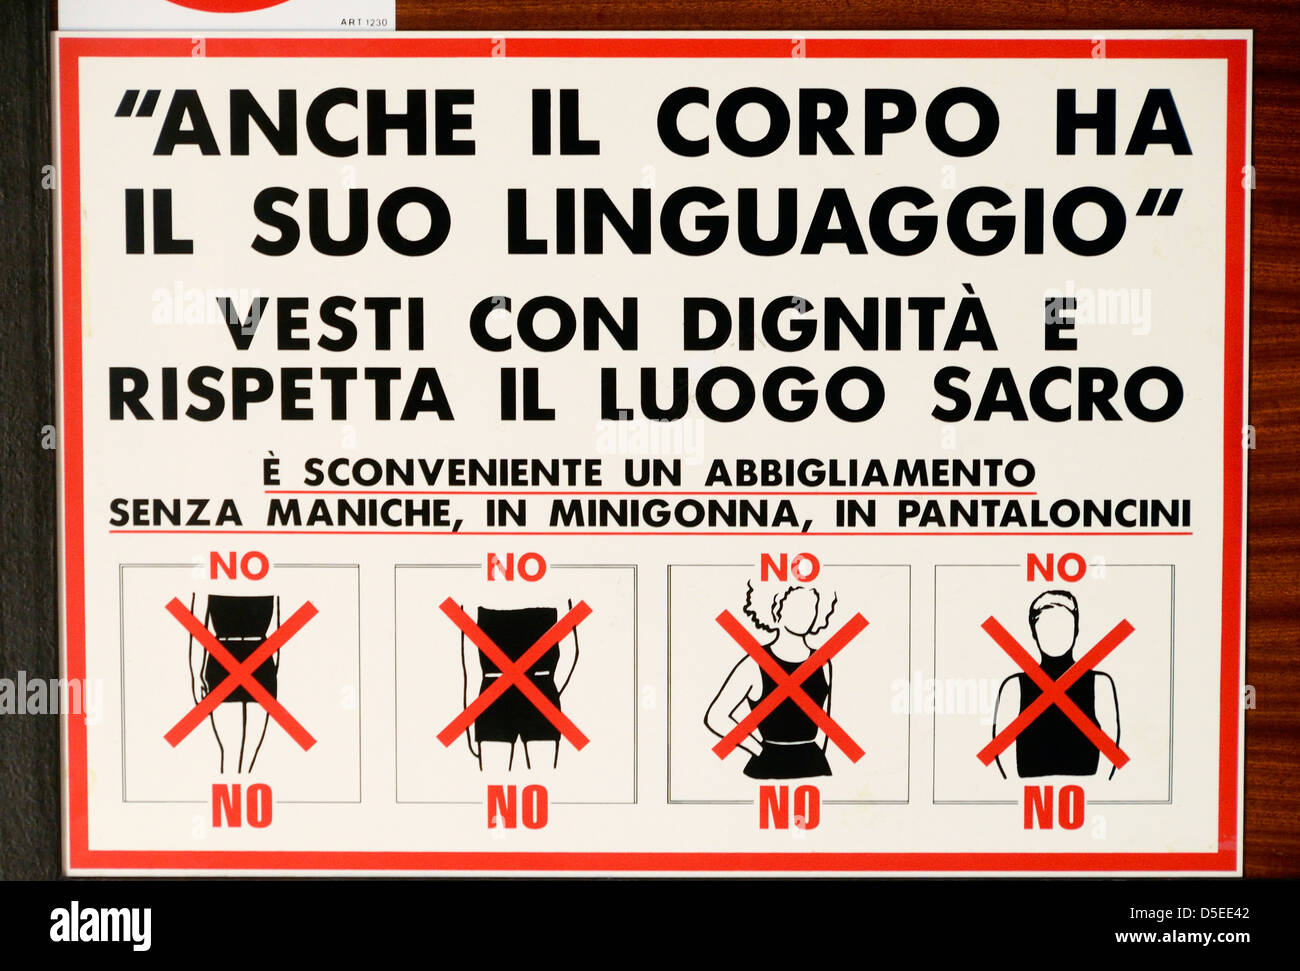 Repressive dress code sign in a church in Riva del Garda, Italy. Stock Photo